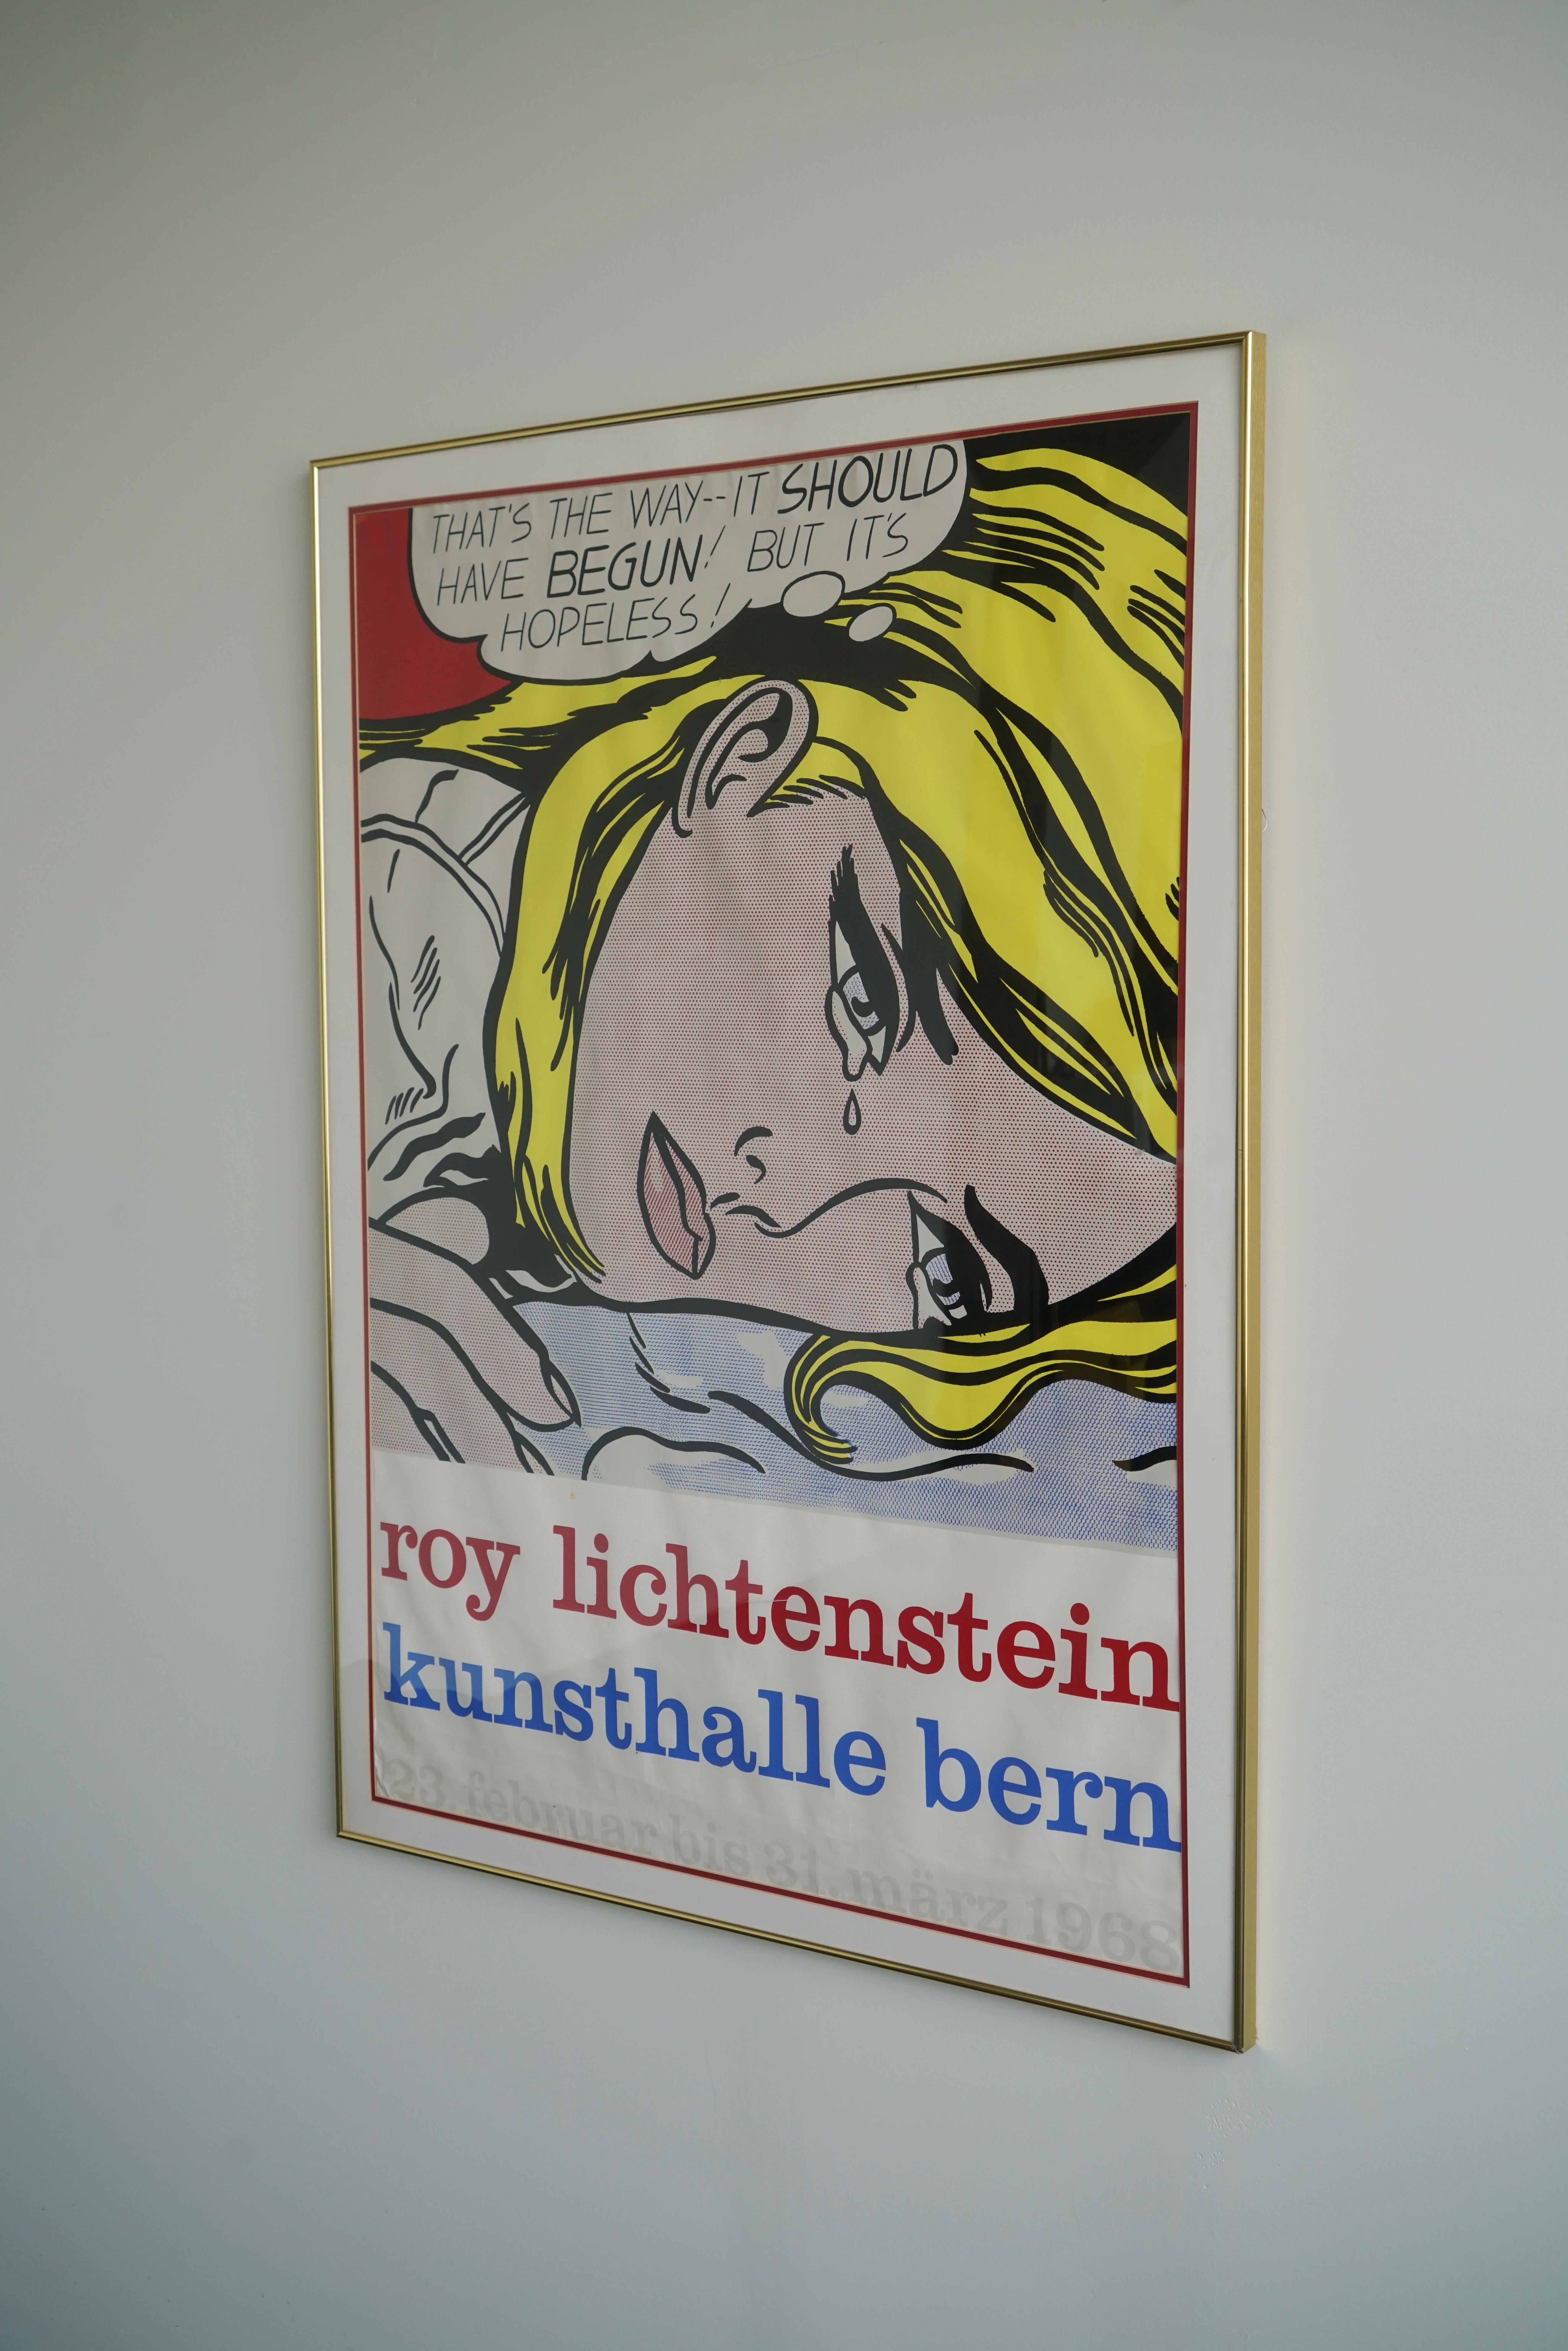 Affiche de l'exposition Roy Lichtenstein Kunsthalle Bern

Sérigraphie, ca. 1968

Encadré

Dimensions :

49.5